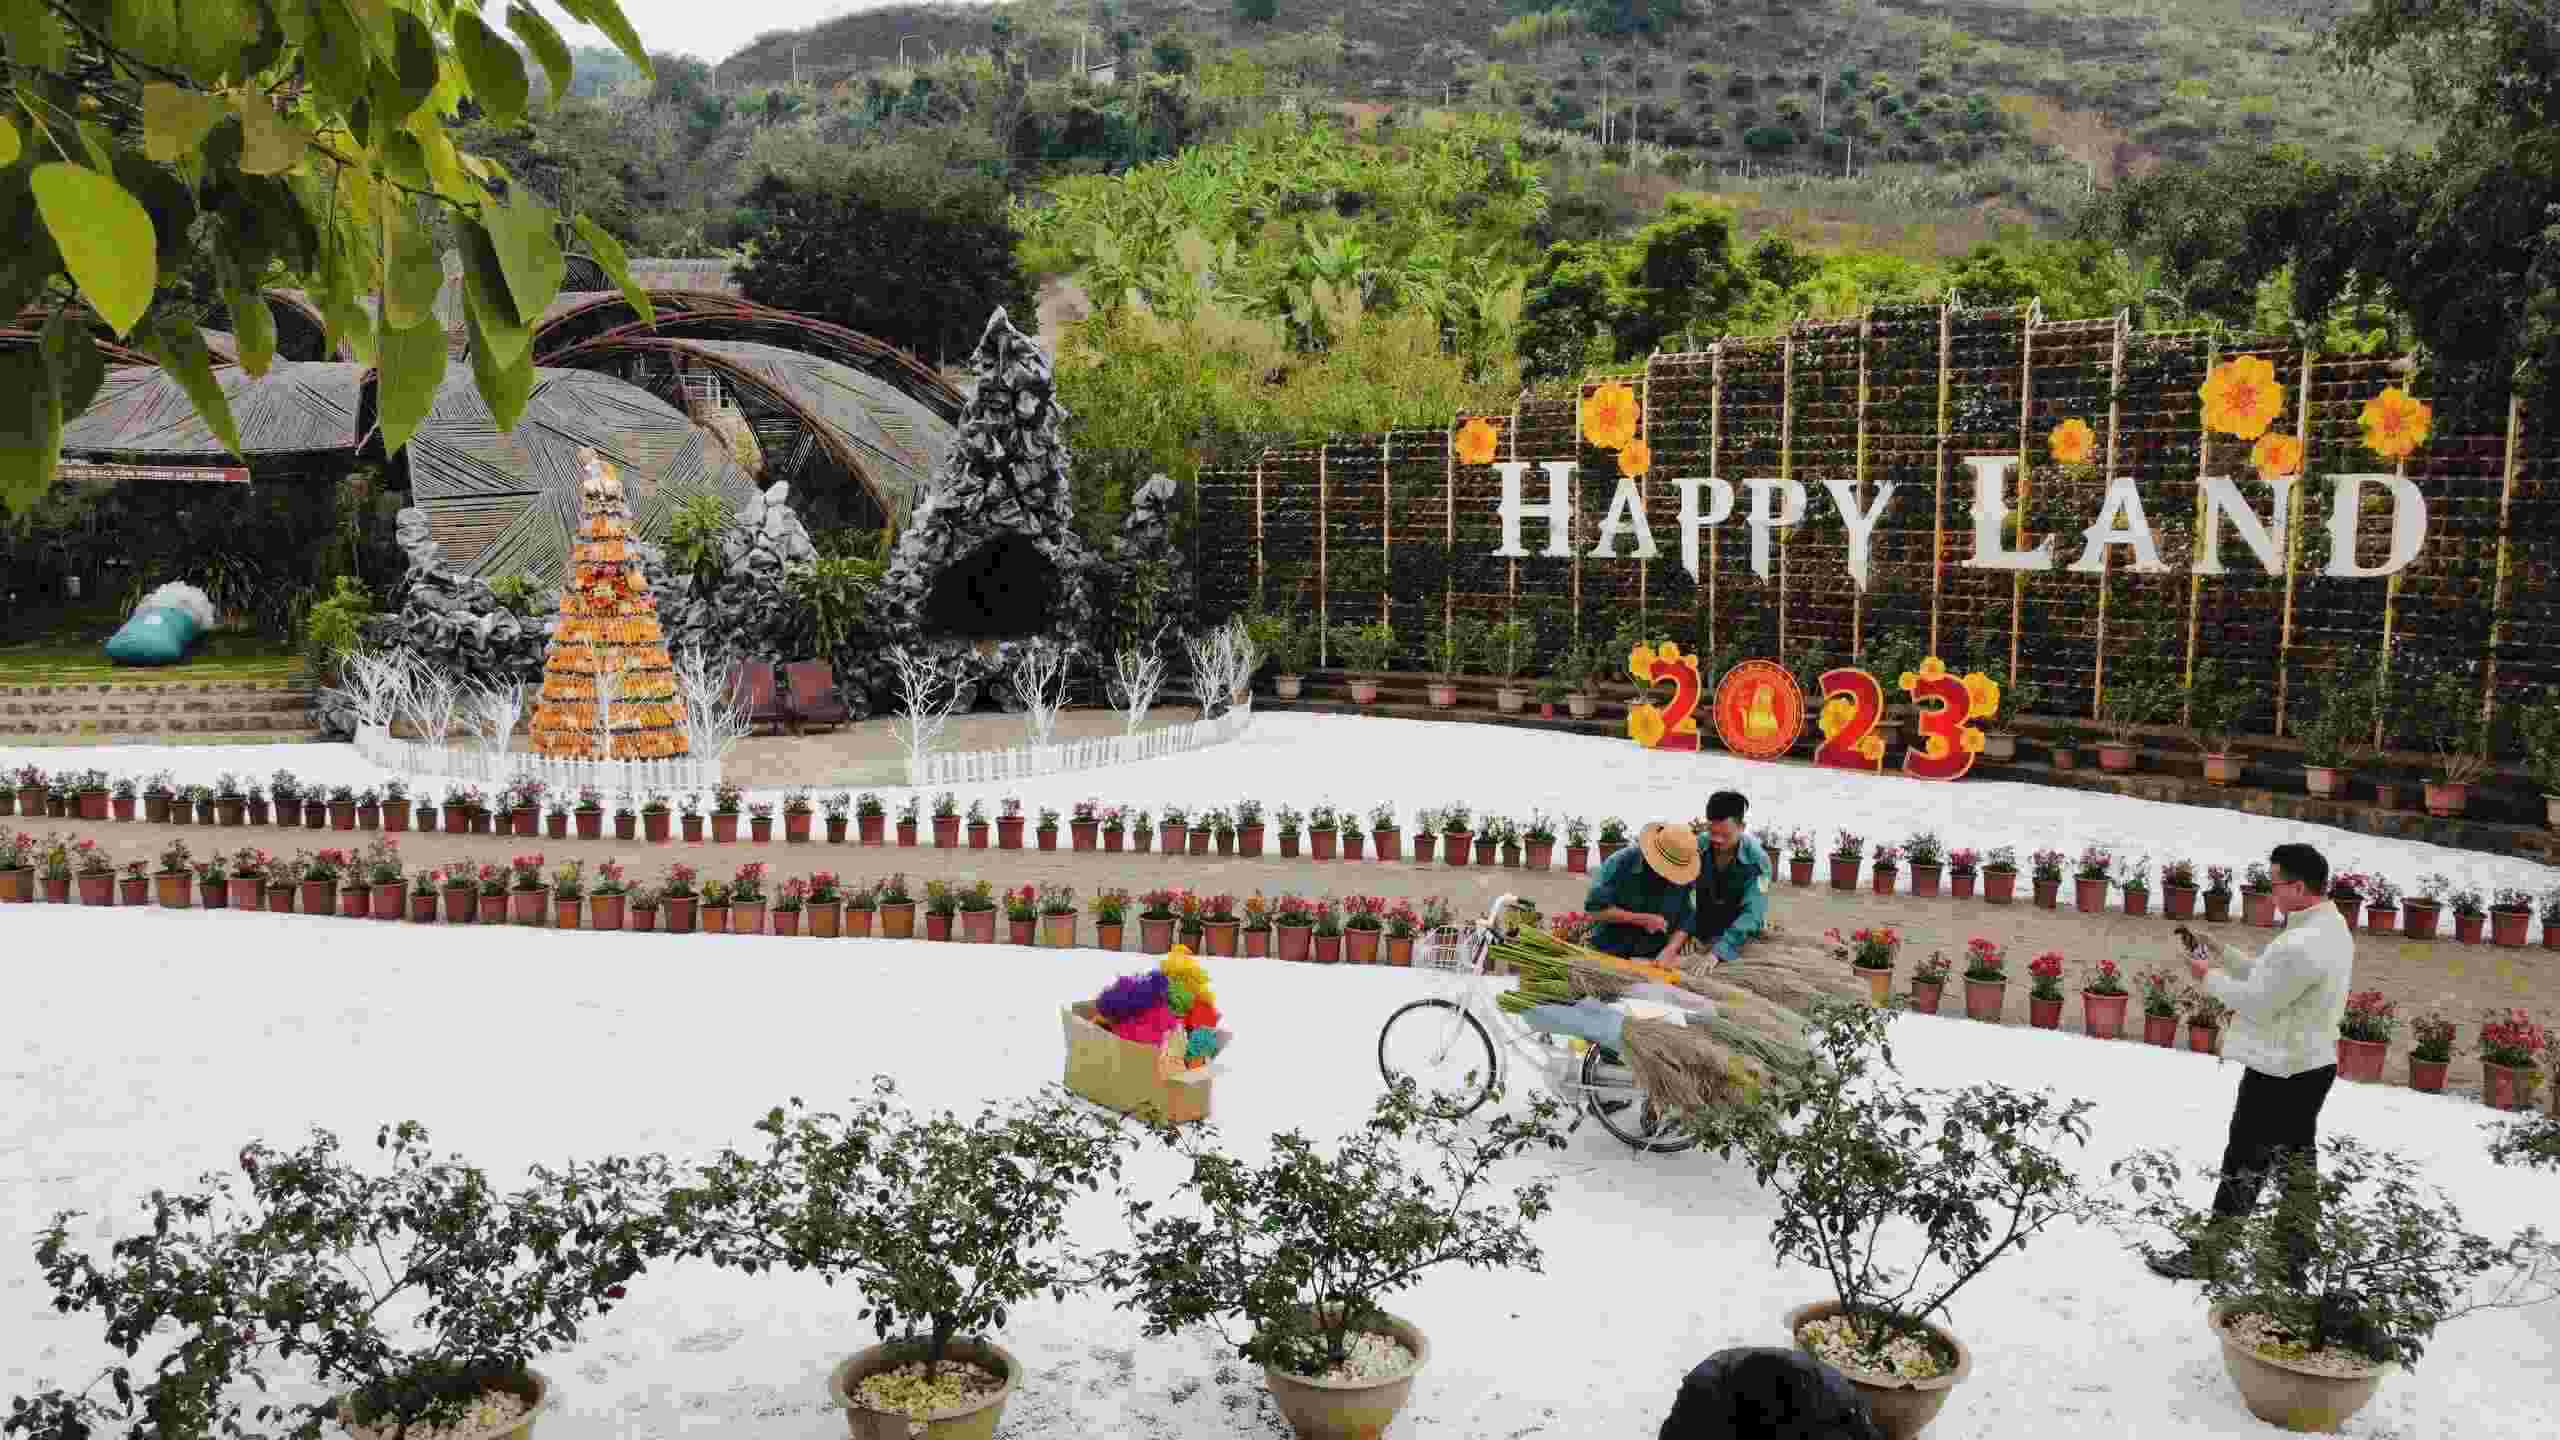 Cũng theo ông Hùng, từ khi mở cửa, mỗi ngày, “thị trấn tuyết” đón khoảng 1000 - 1.500 lượt khách. Ảnh: Happy land